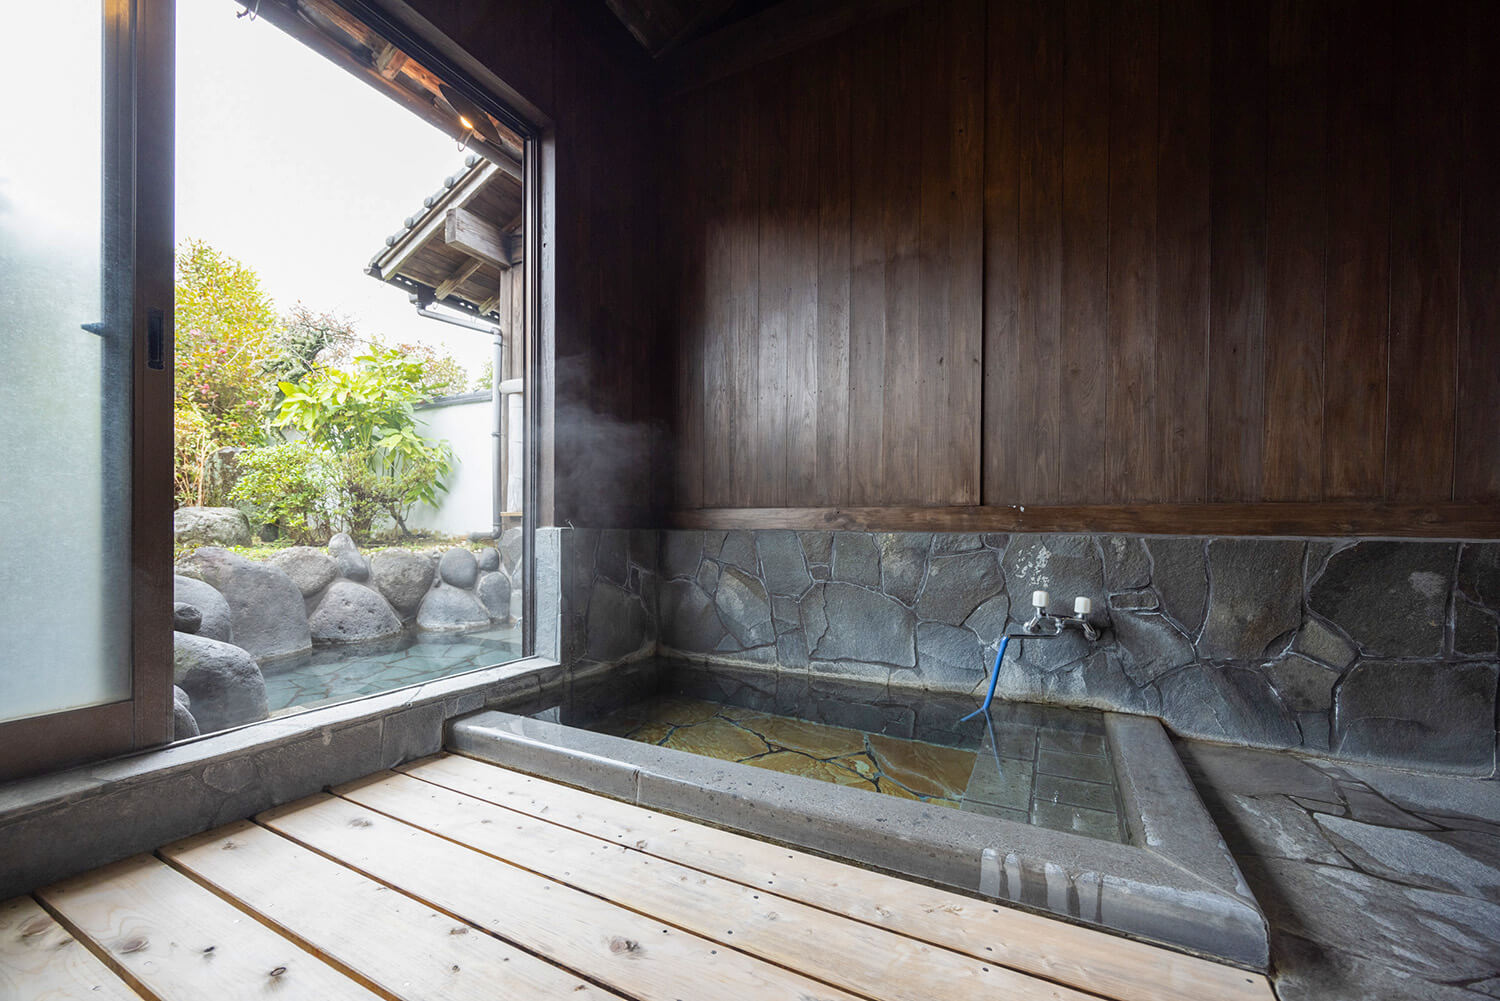 家族風呂「由布岳」には、内風呂と露天風呂がある。家族風呂は全部で6部屋